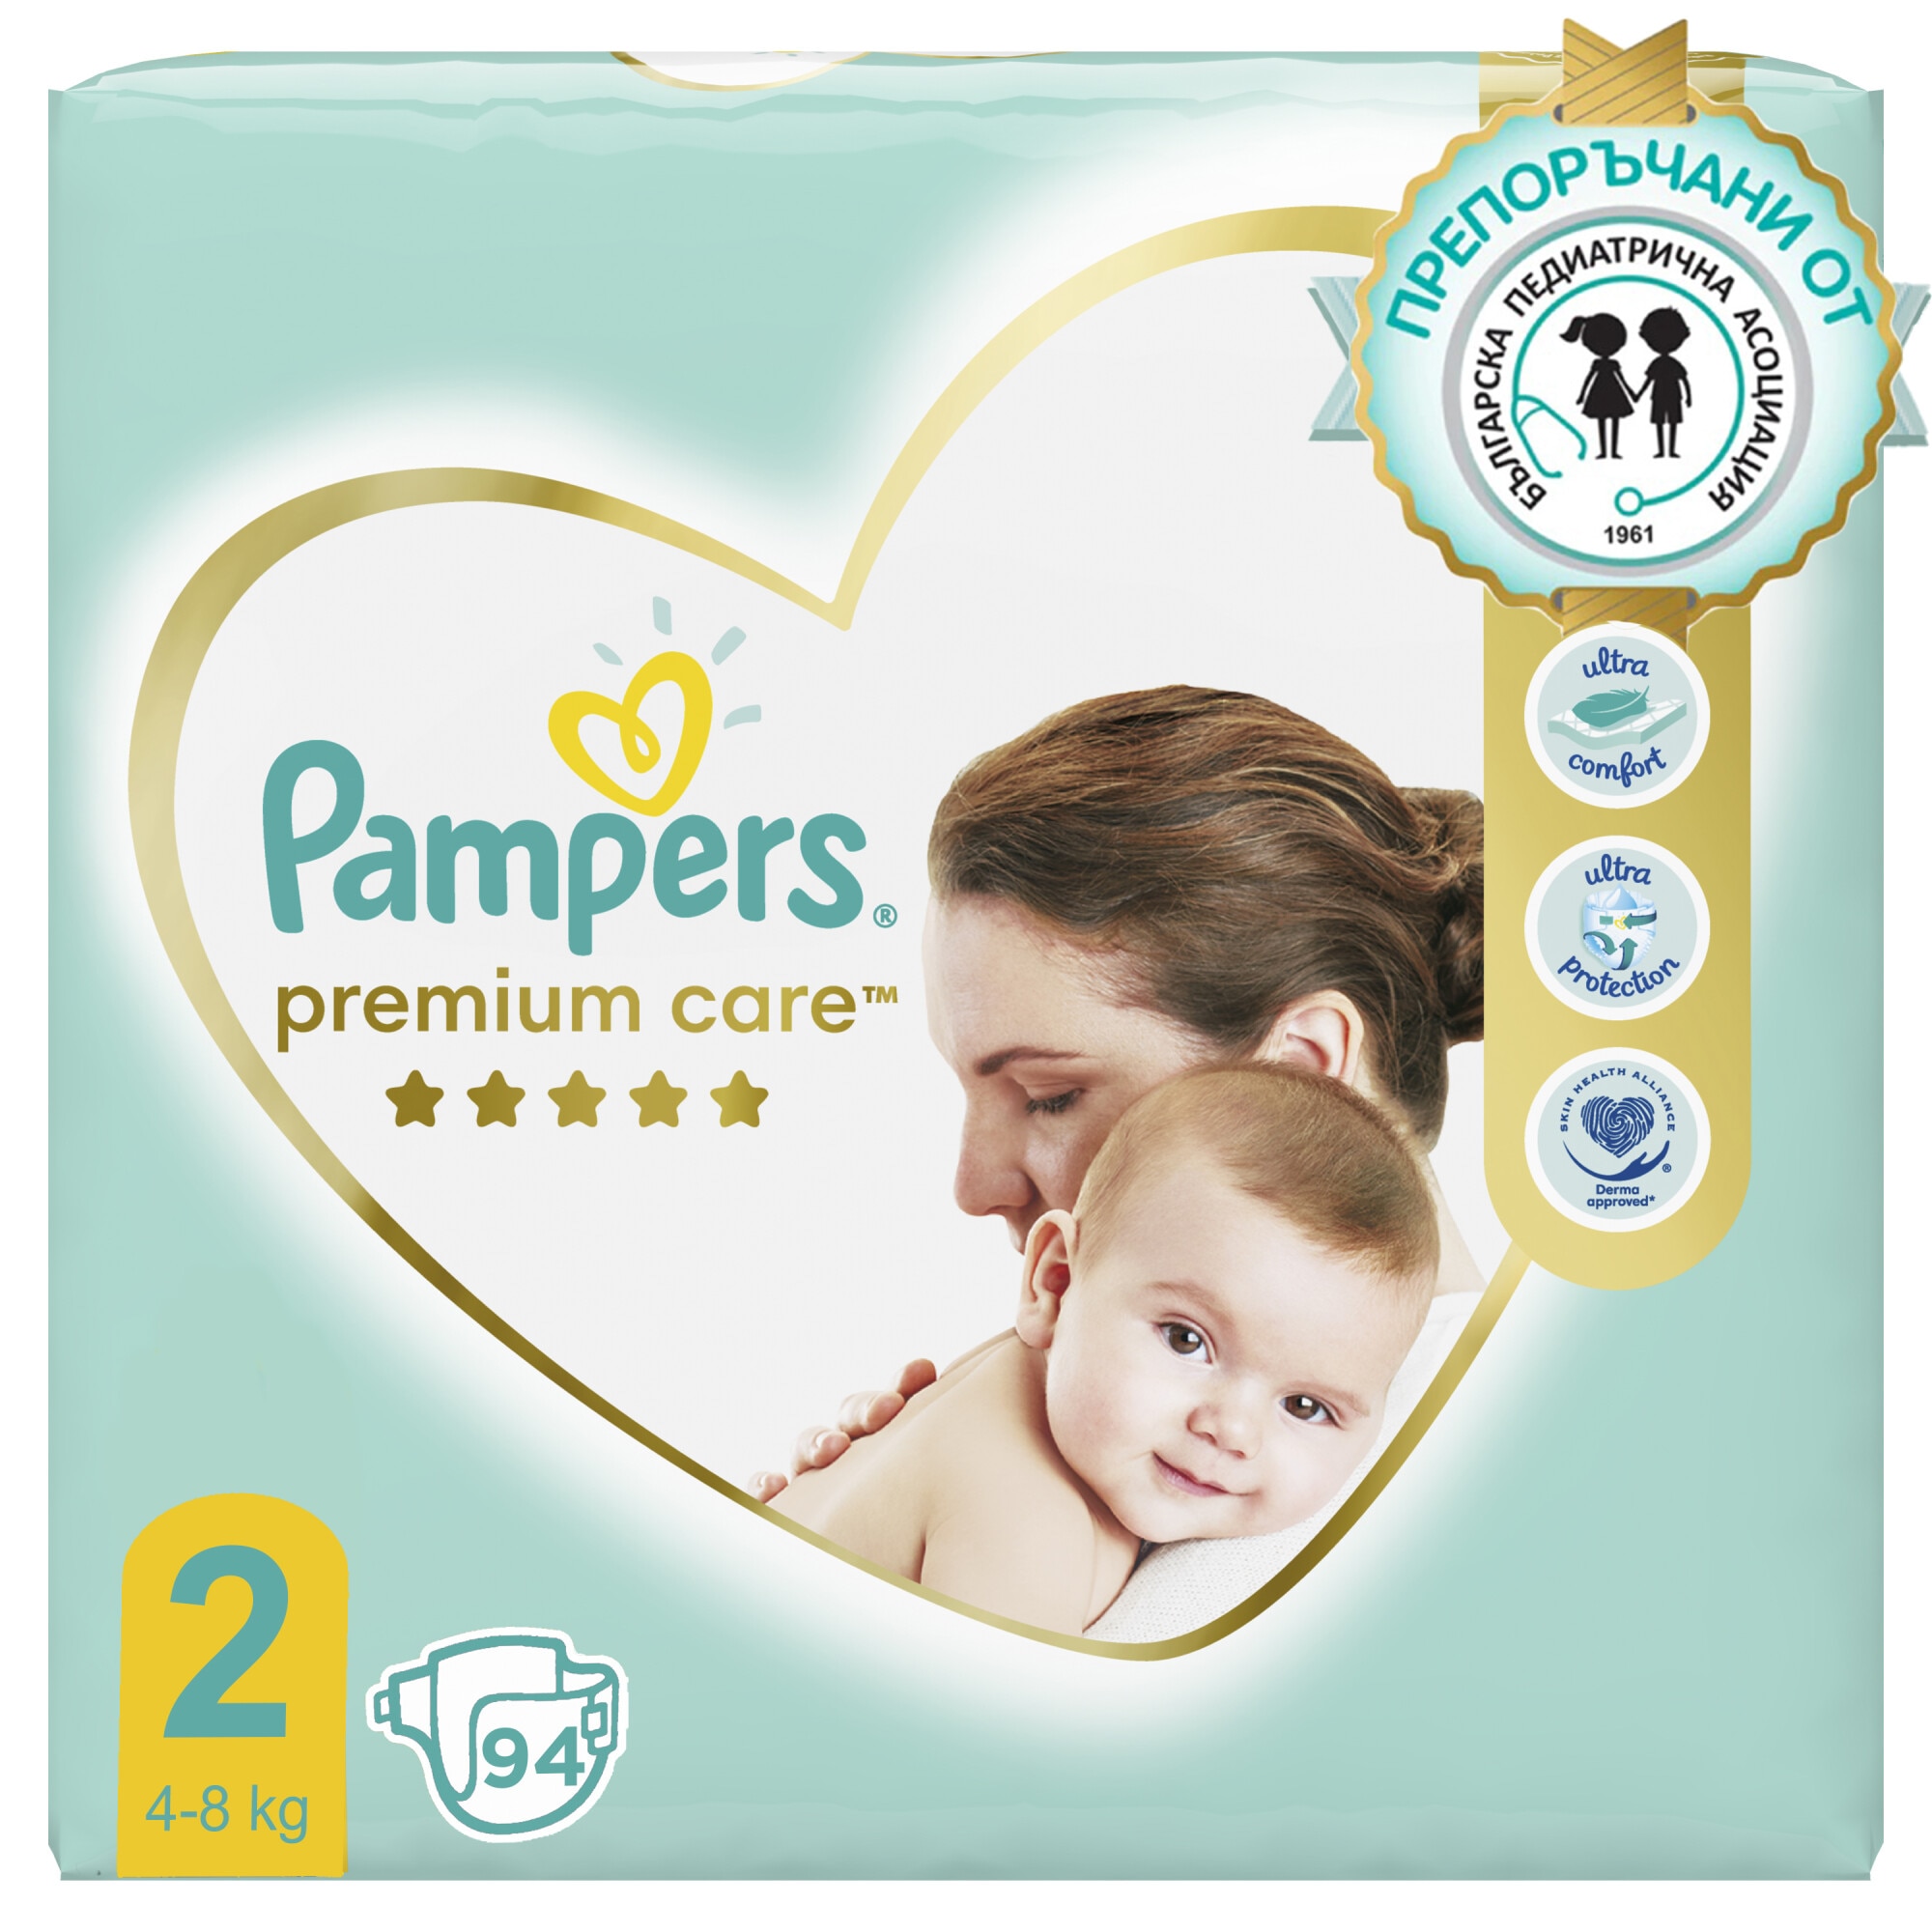 pampers 2 premium care